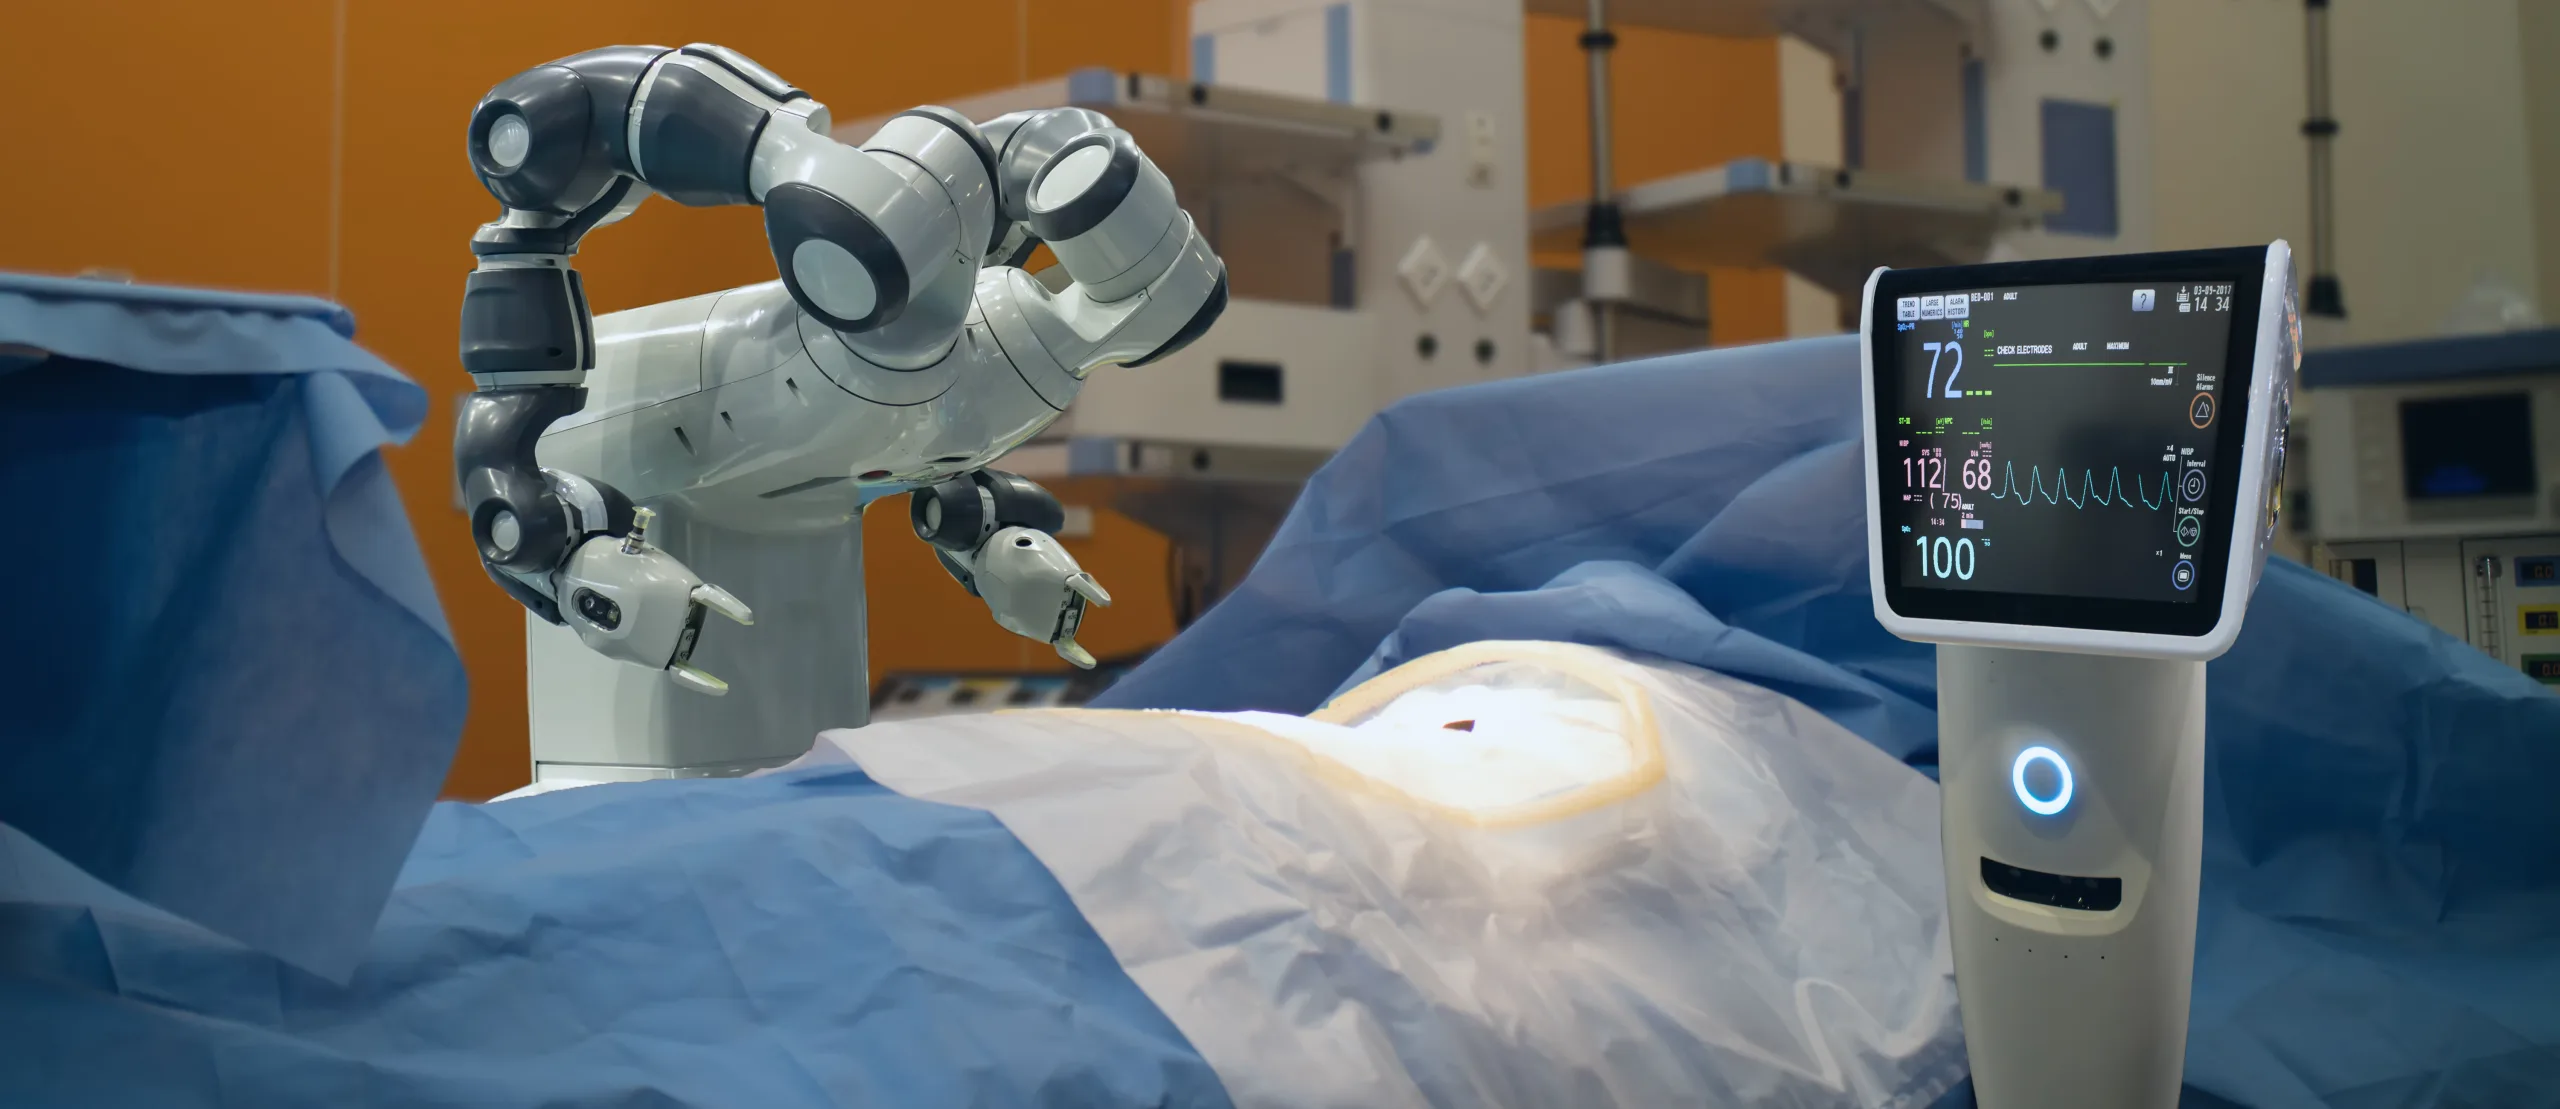 Robot hỗ trợ phẫu thuật hoạt động như thế nào